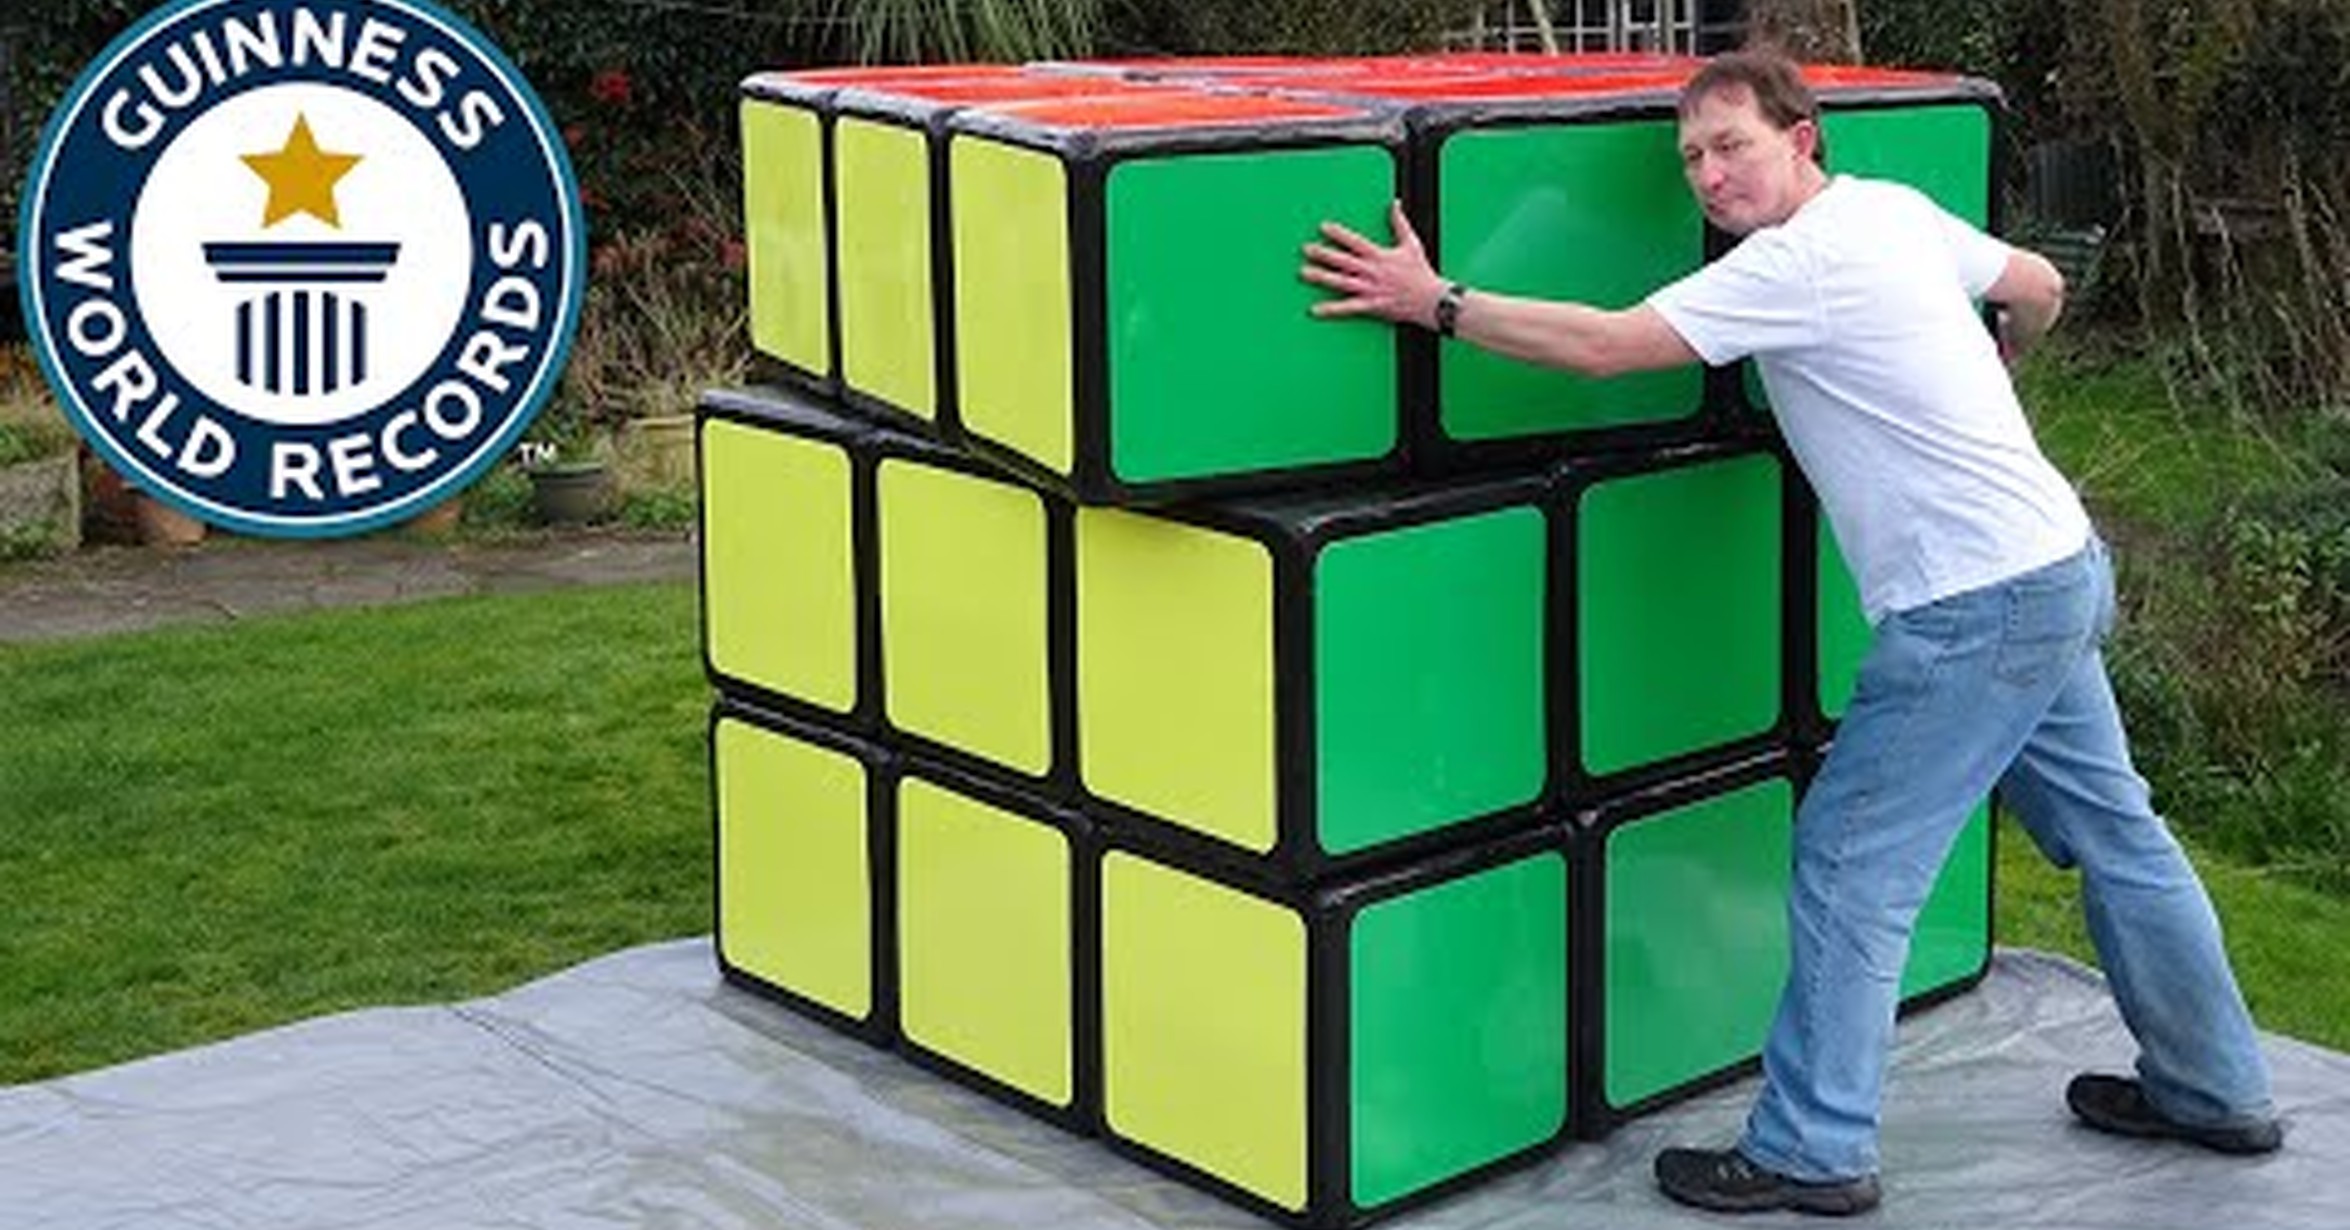 Big cube